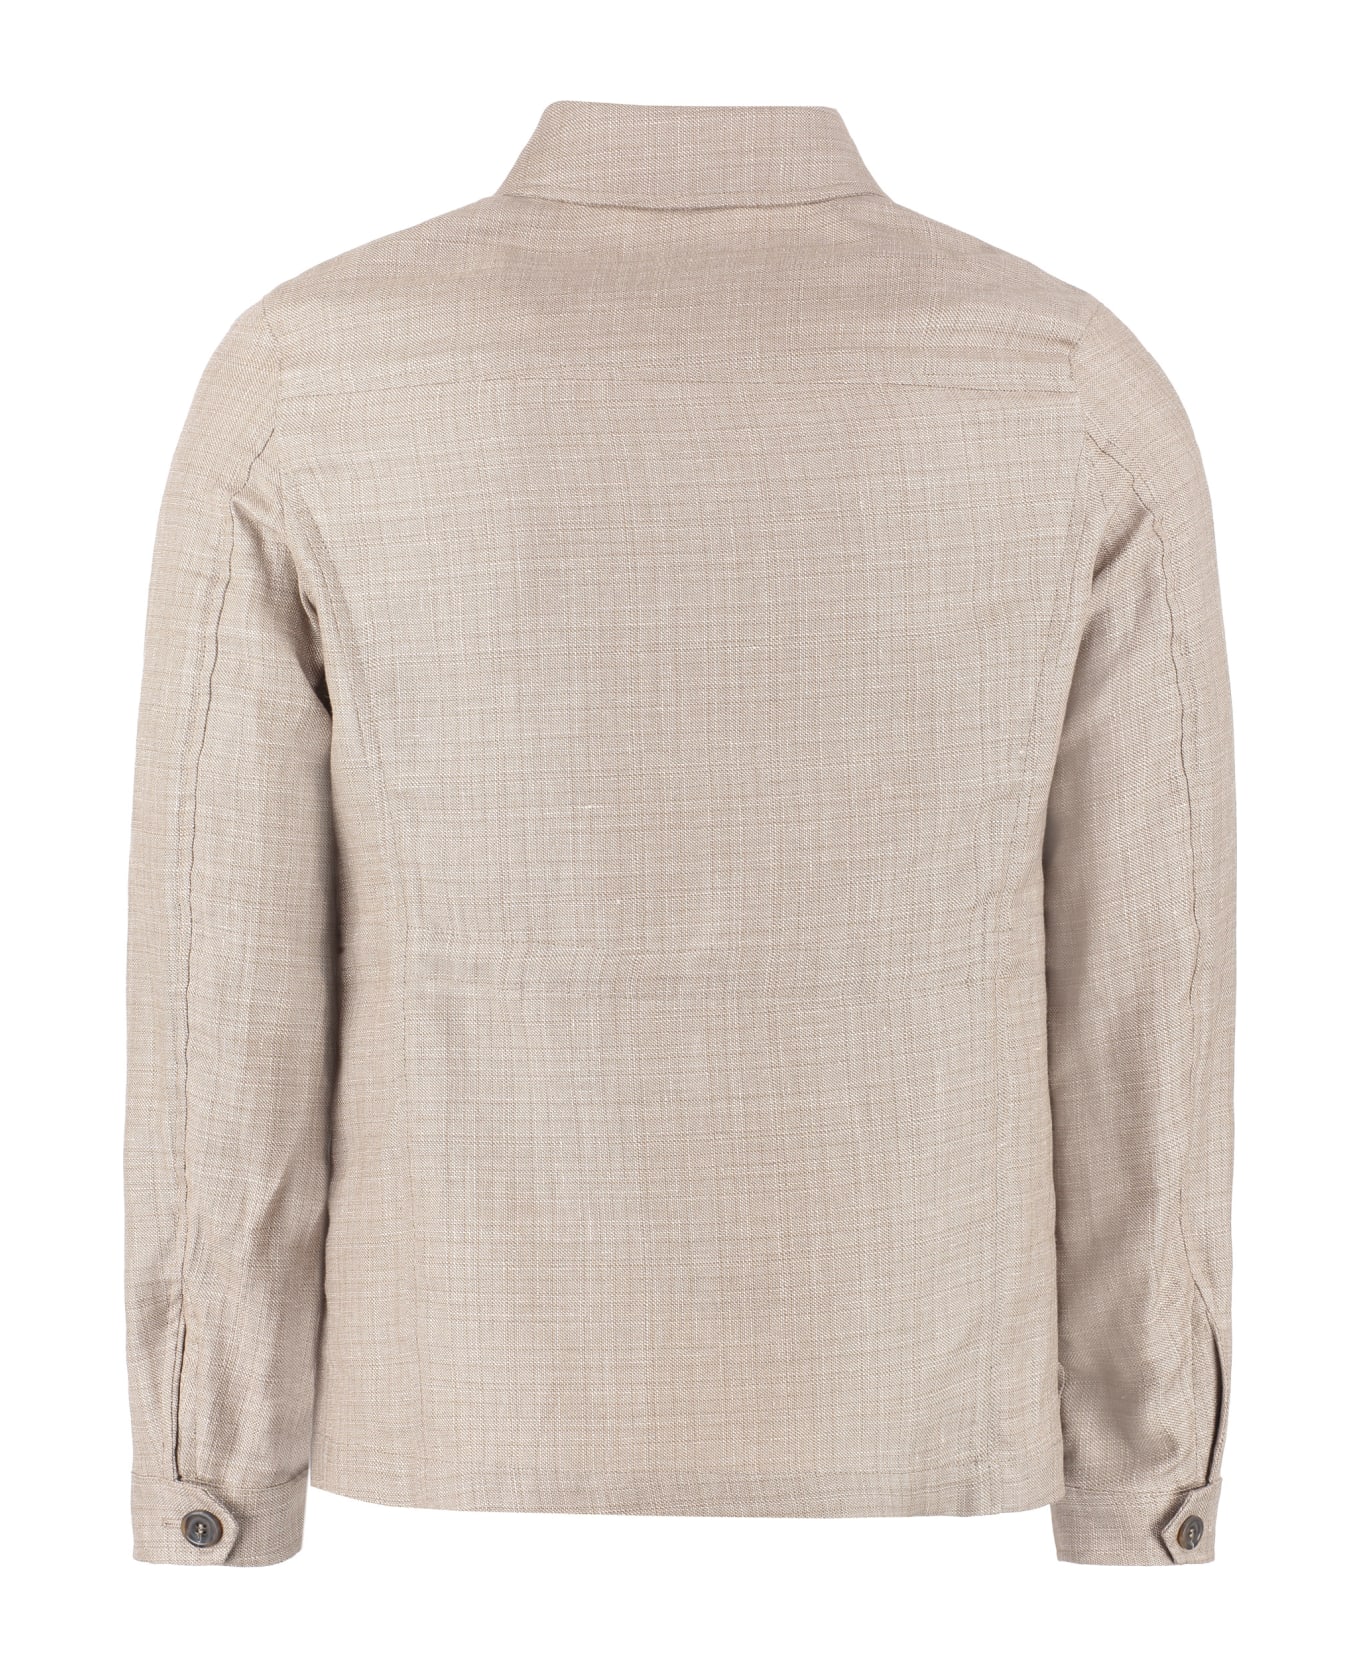 Canali Wool Blend Single-breast Jacket - Beige コート